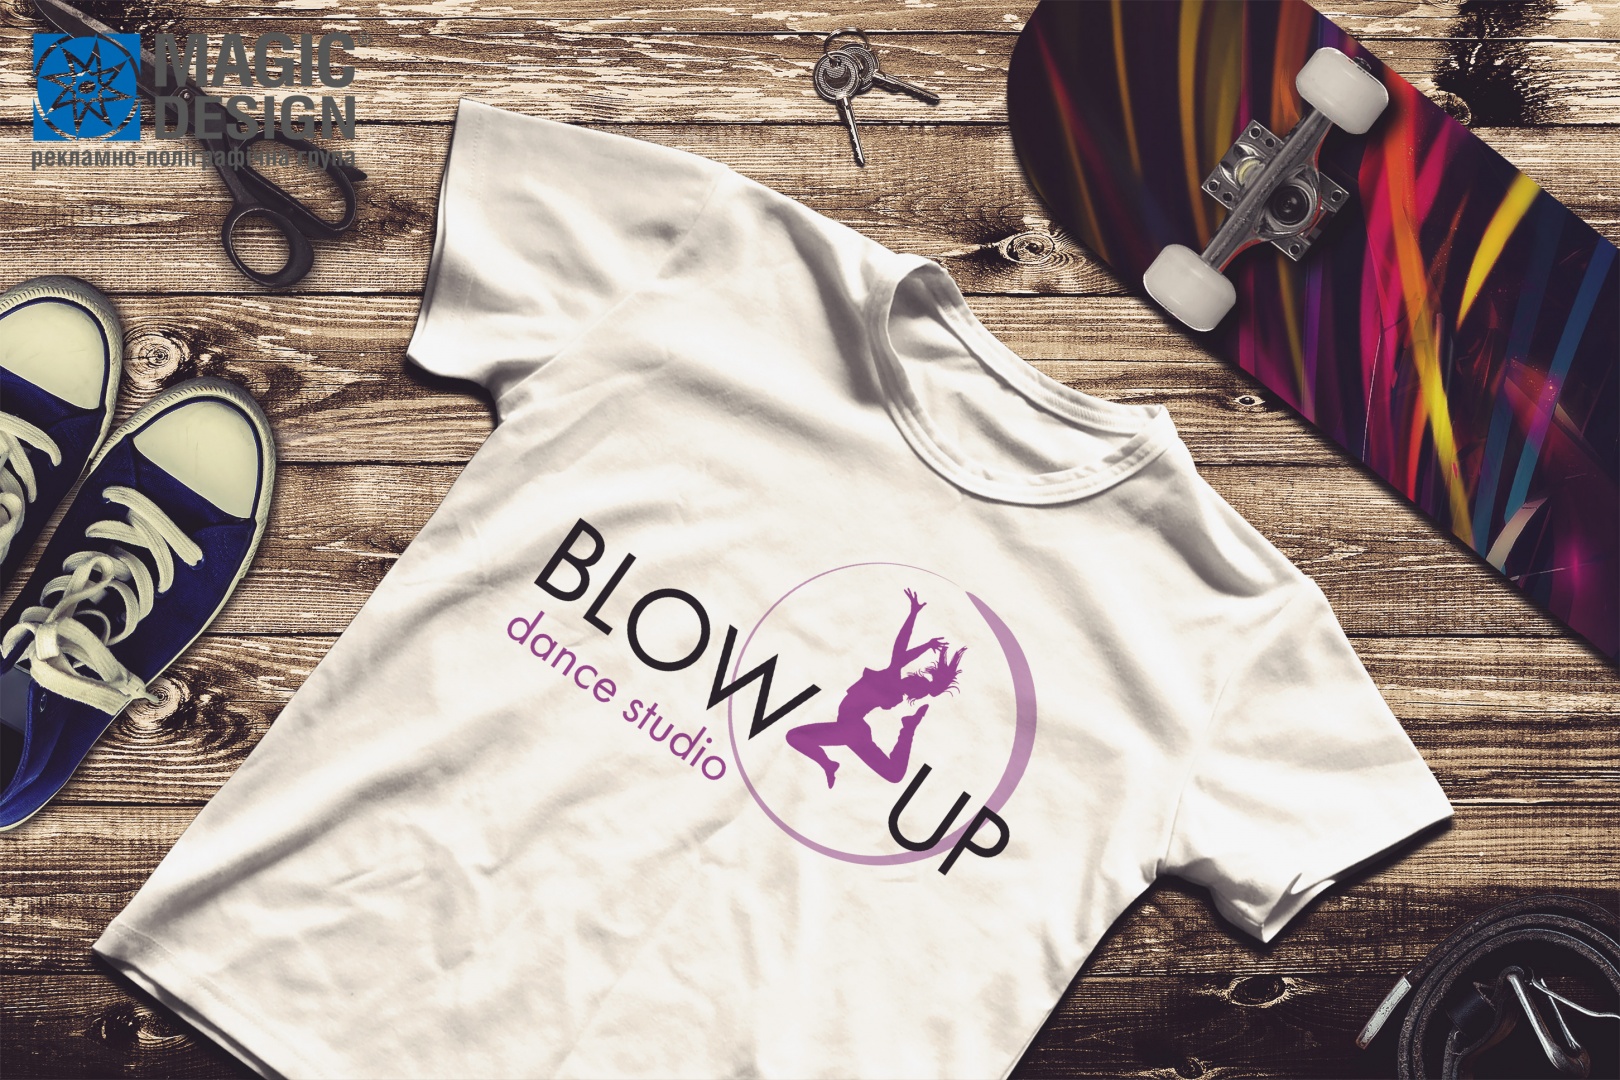 Друк футболок танцювальної студії BLOW UP